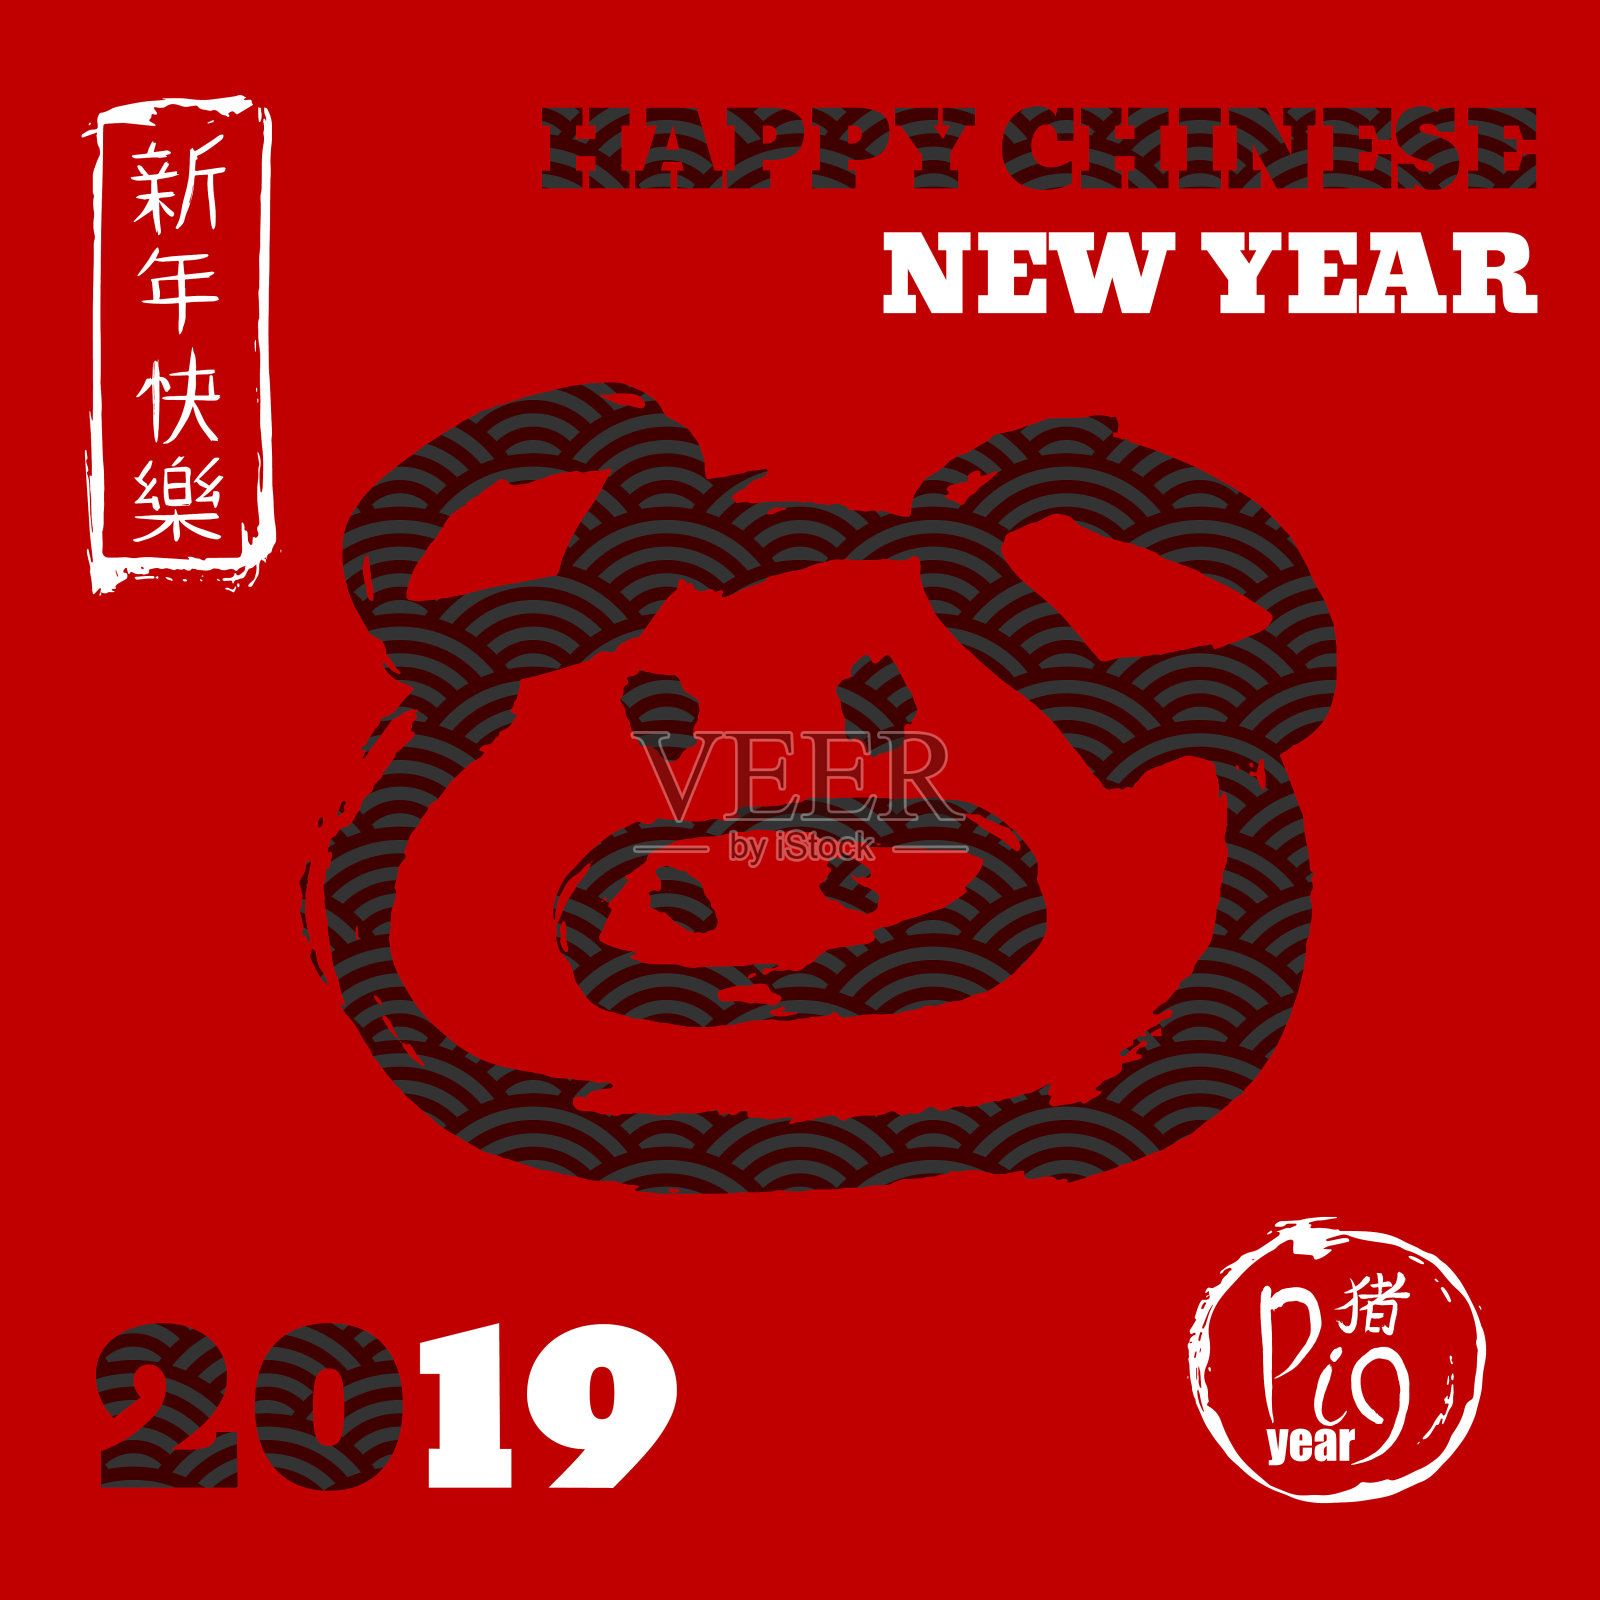 2019年中国猪年。日历的海报。中国新年快乐。日本象形文字中的圆圈表示:猪。手绘笔墨刷动物鼻子。设计模板素材